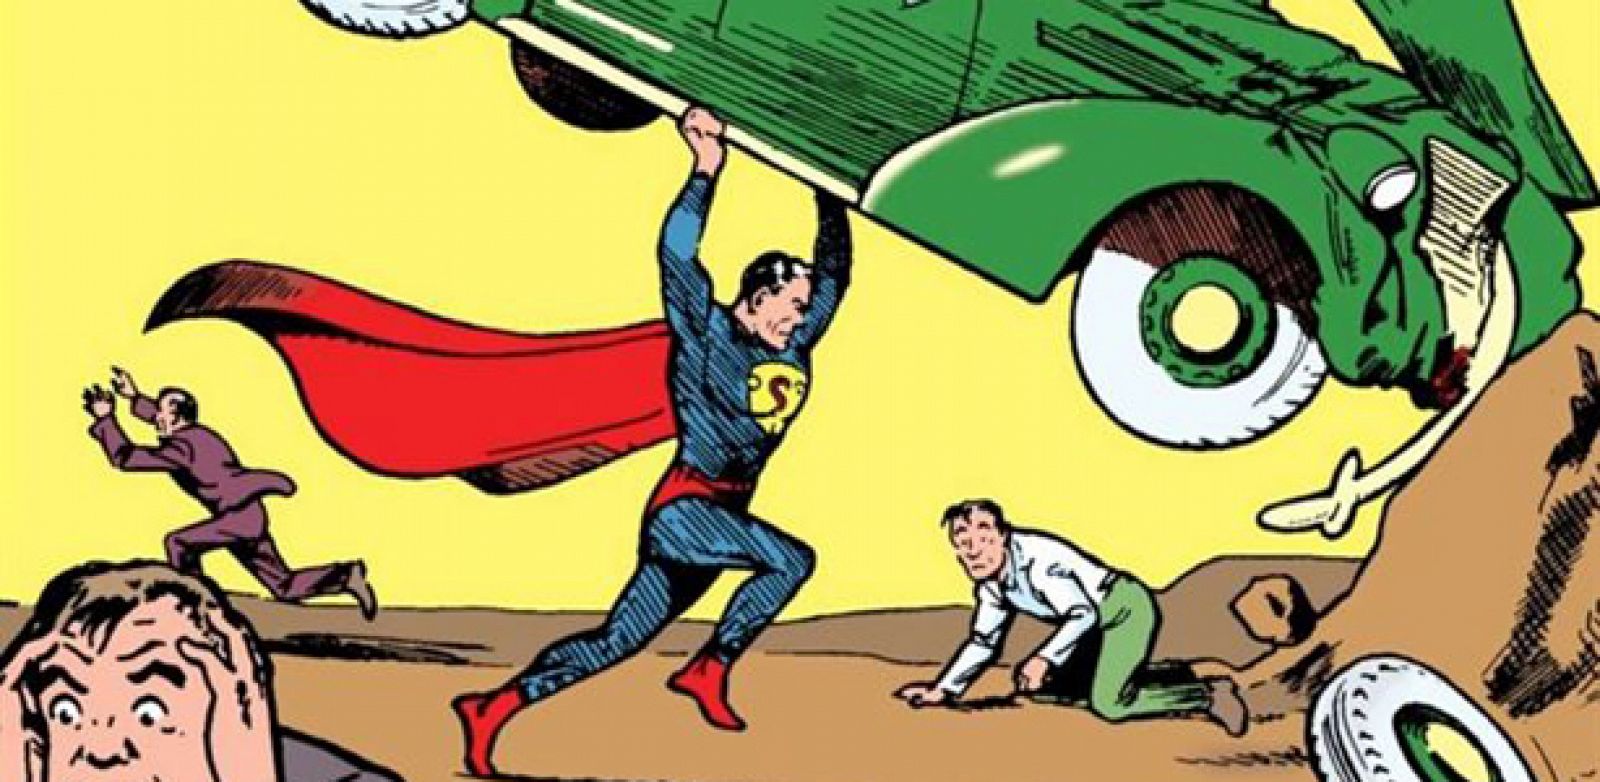 Fragmento de la portada del 'Action comics' Nº 1, publicado en 1938, el origen de Superman y también del género de superhéroes.